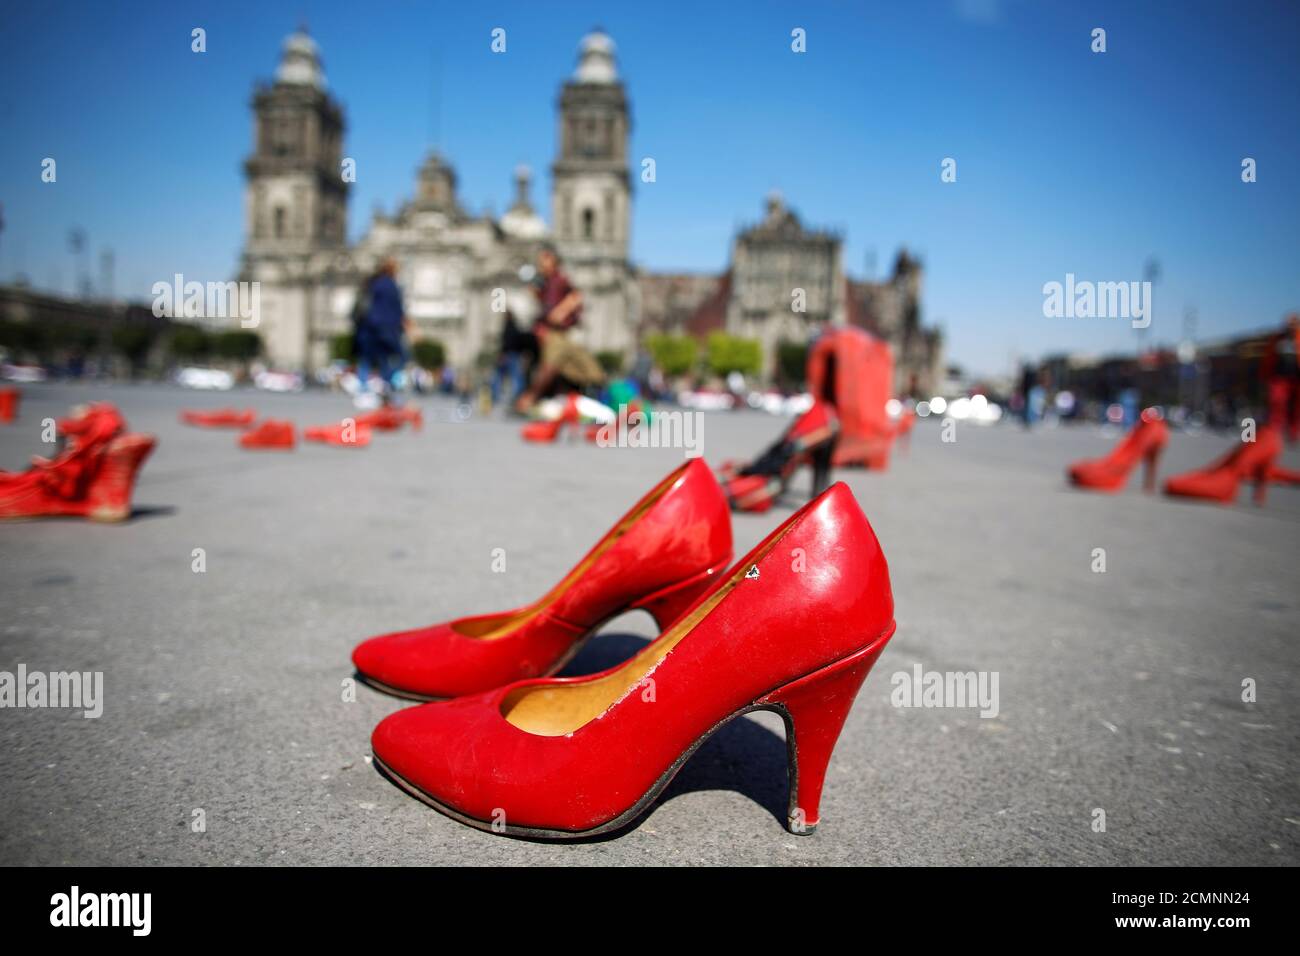 Coppie di scarpe rosse da donna, esposte dall'artista visuale messicano  Elina Chauvet per protestare contro la violenza di genere e il  femminicidio, sono raffigurate in piazza Zocalo a Città del Messico,  Messico,